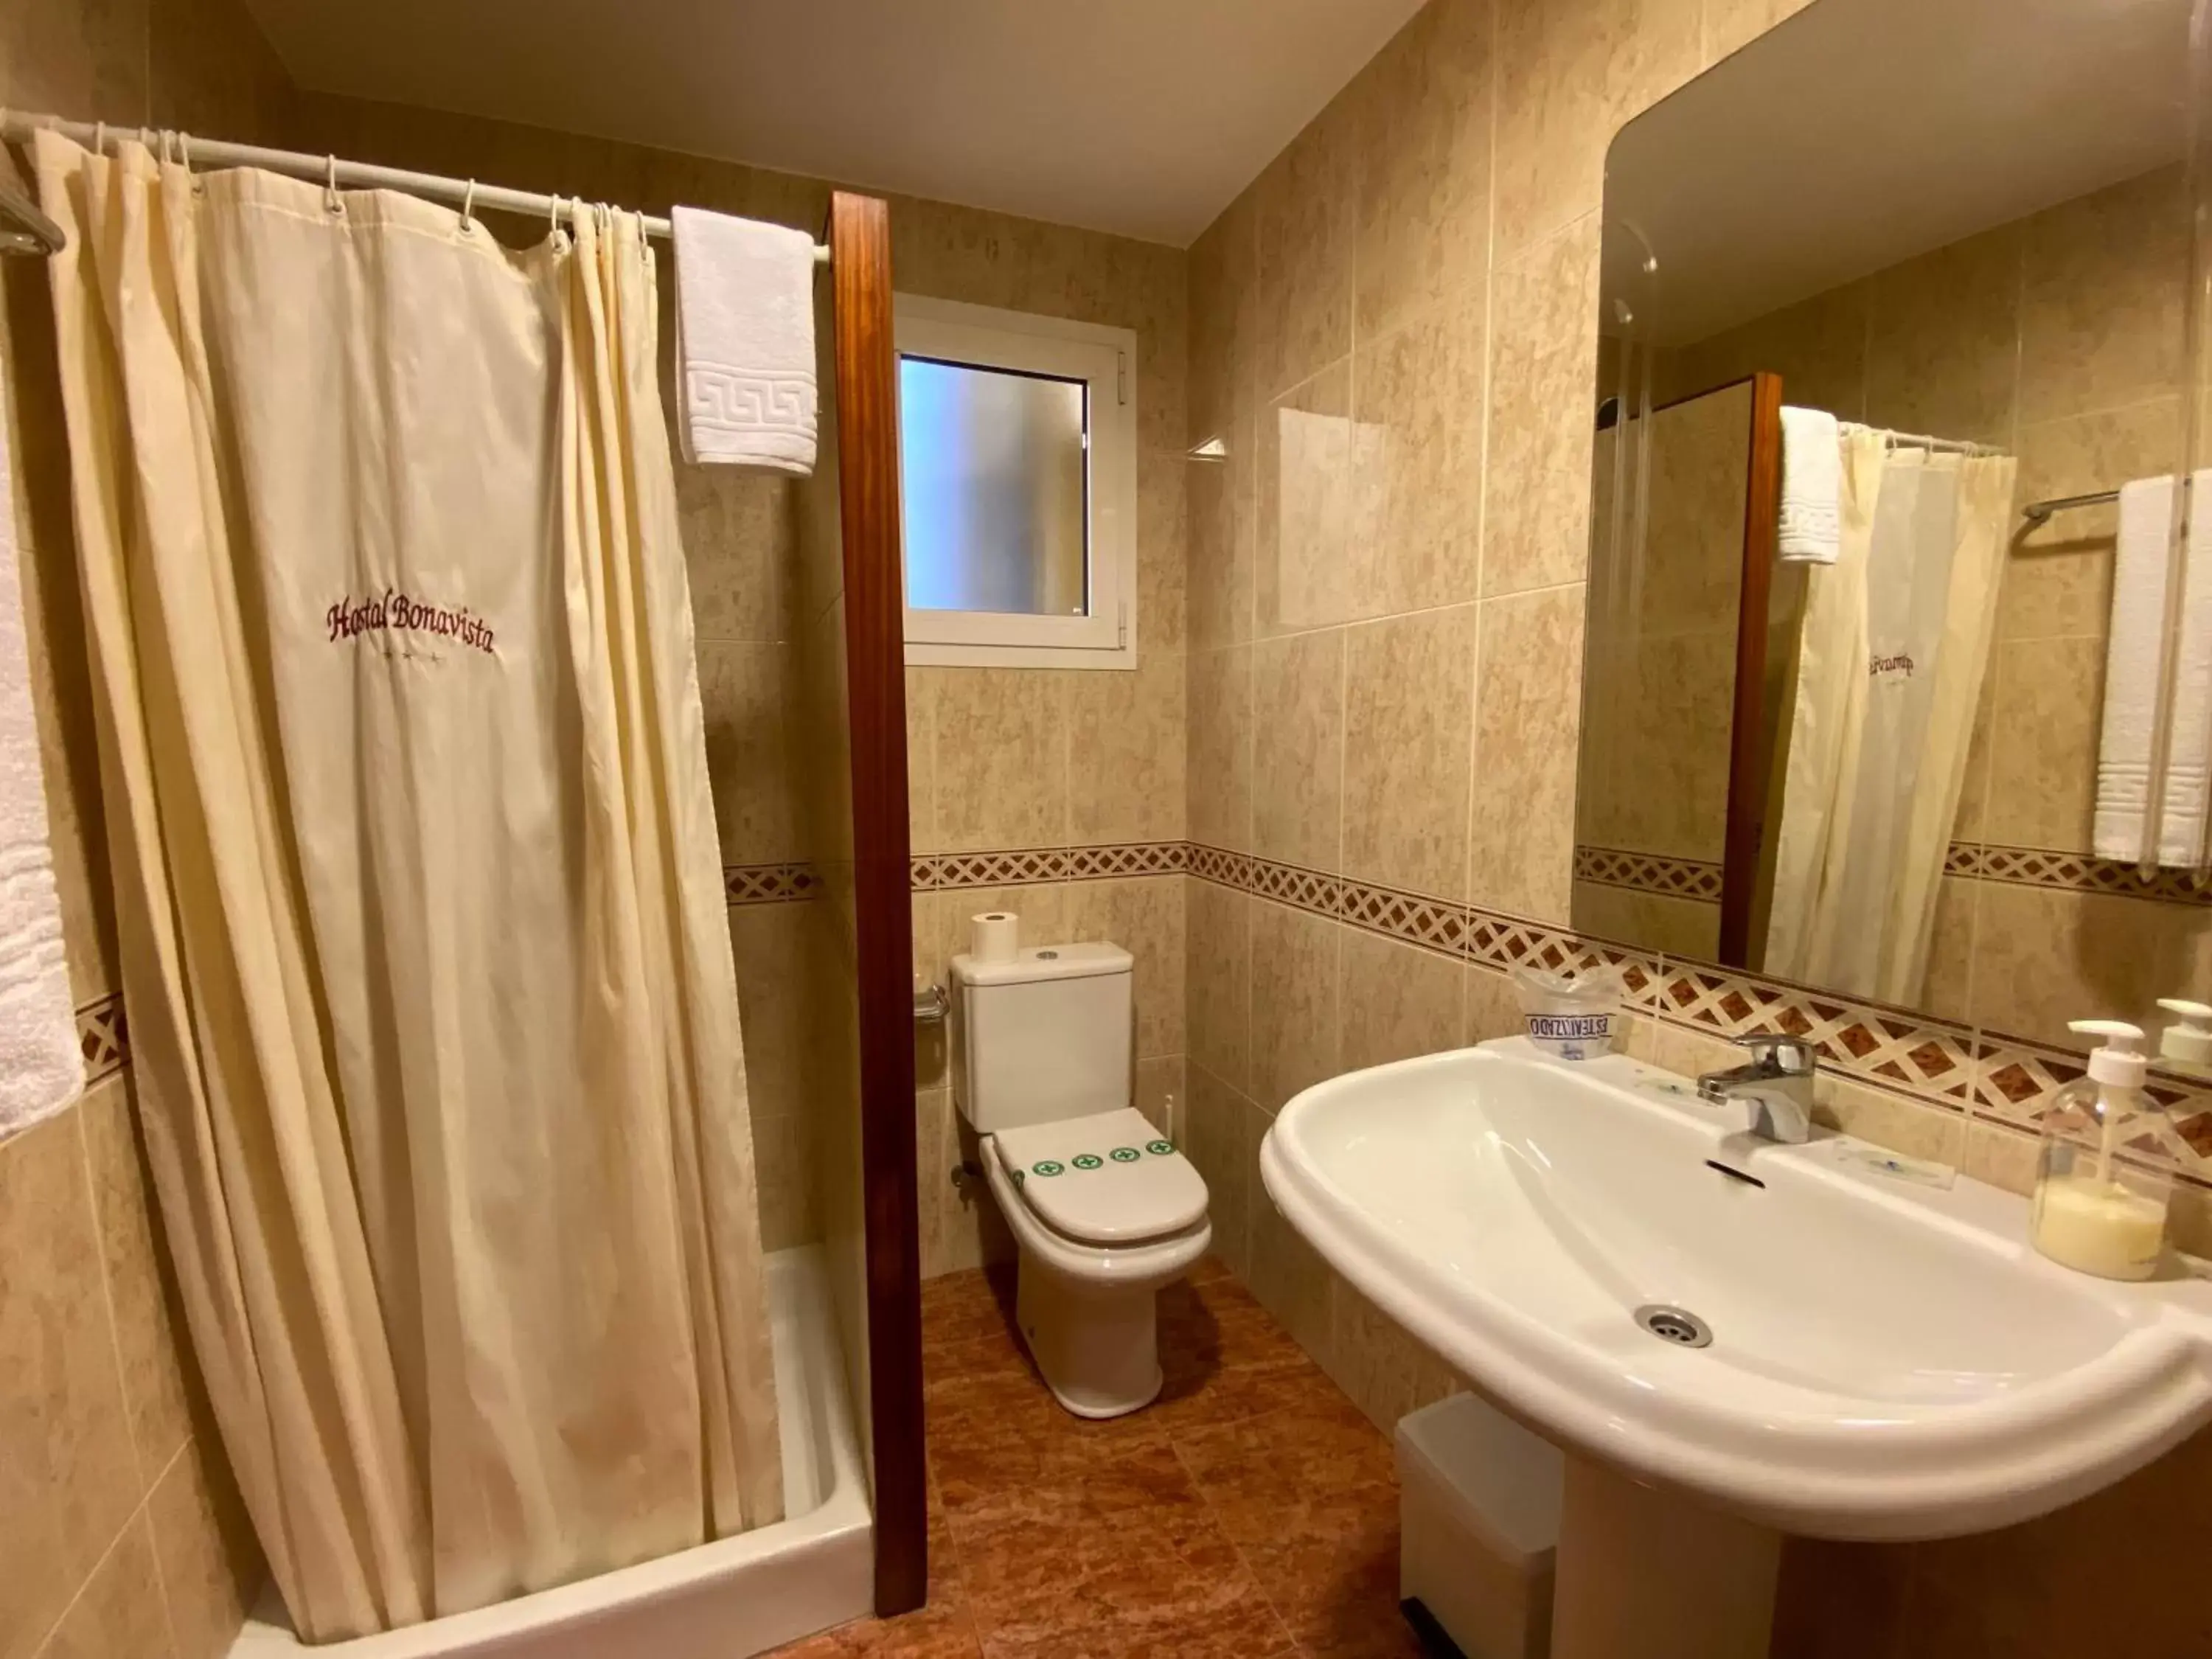 Bathroom in Hostal Bonavista